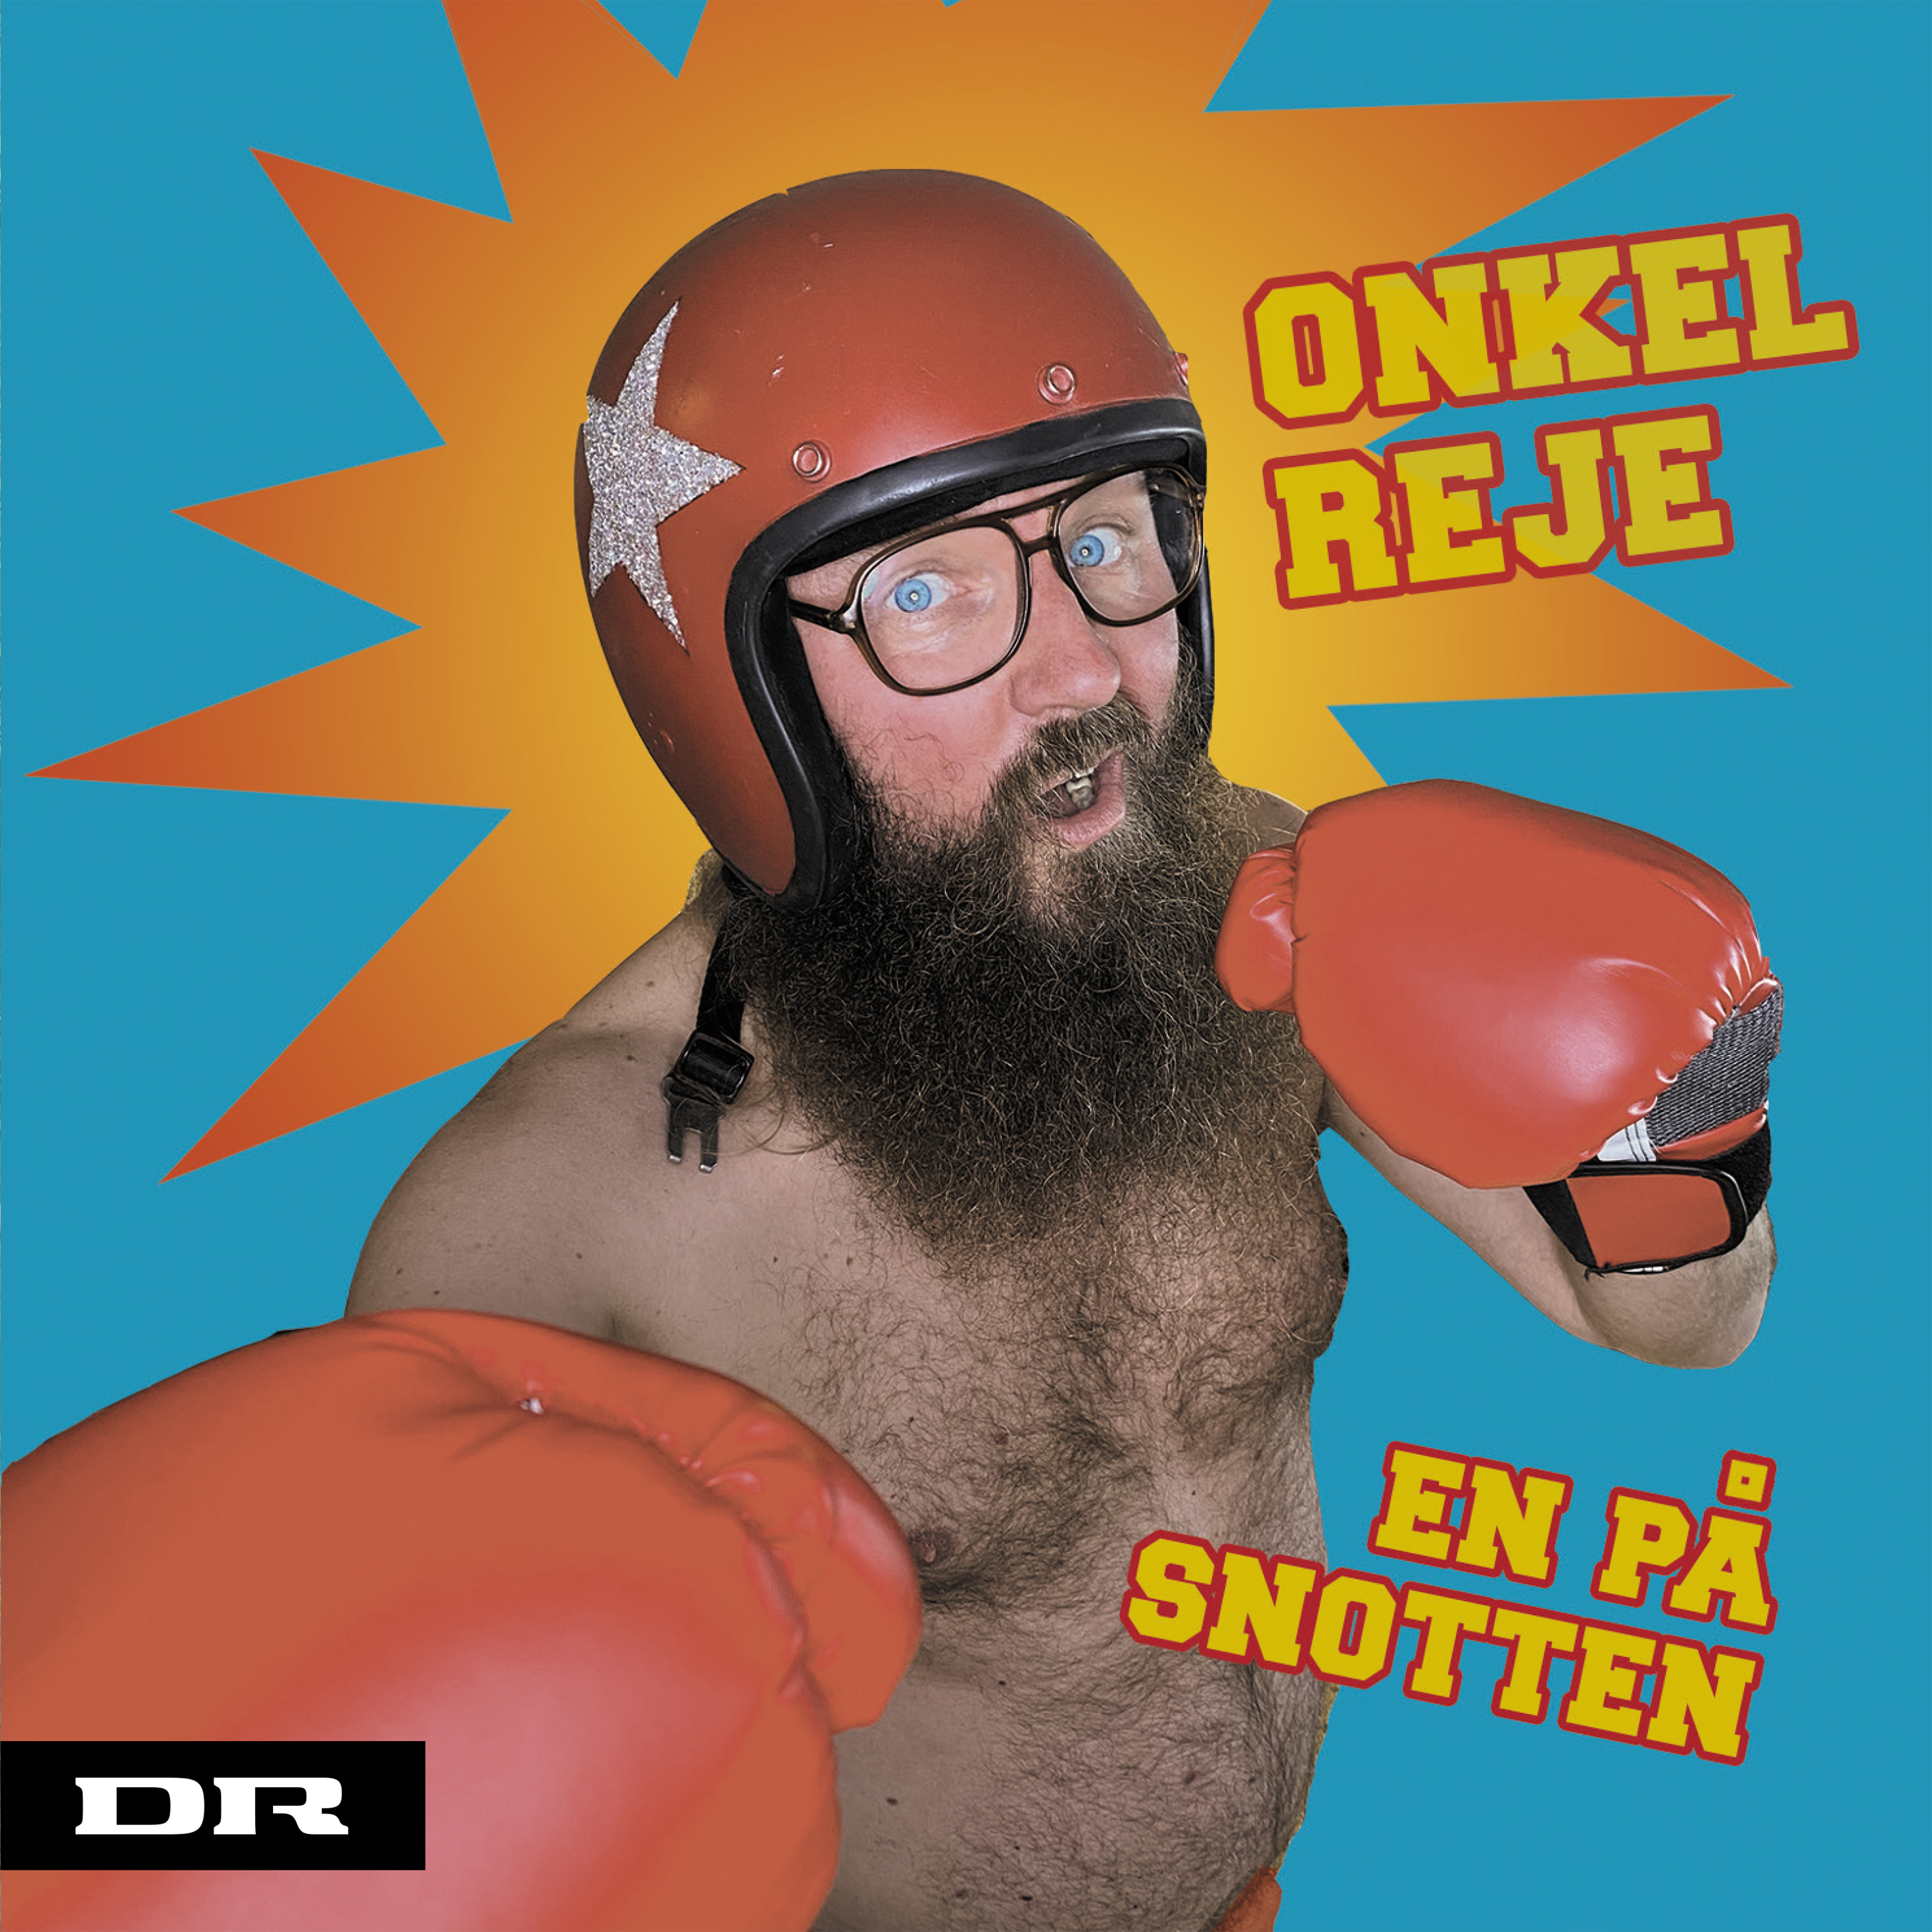 Onkel Reje - En på snotten (Vinyl)